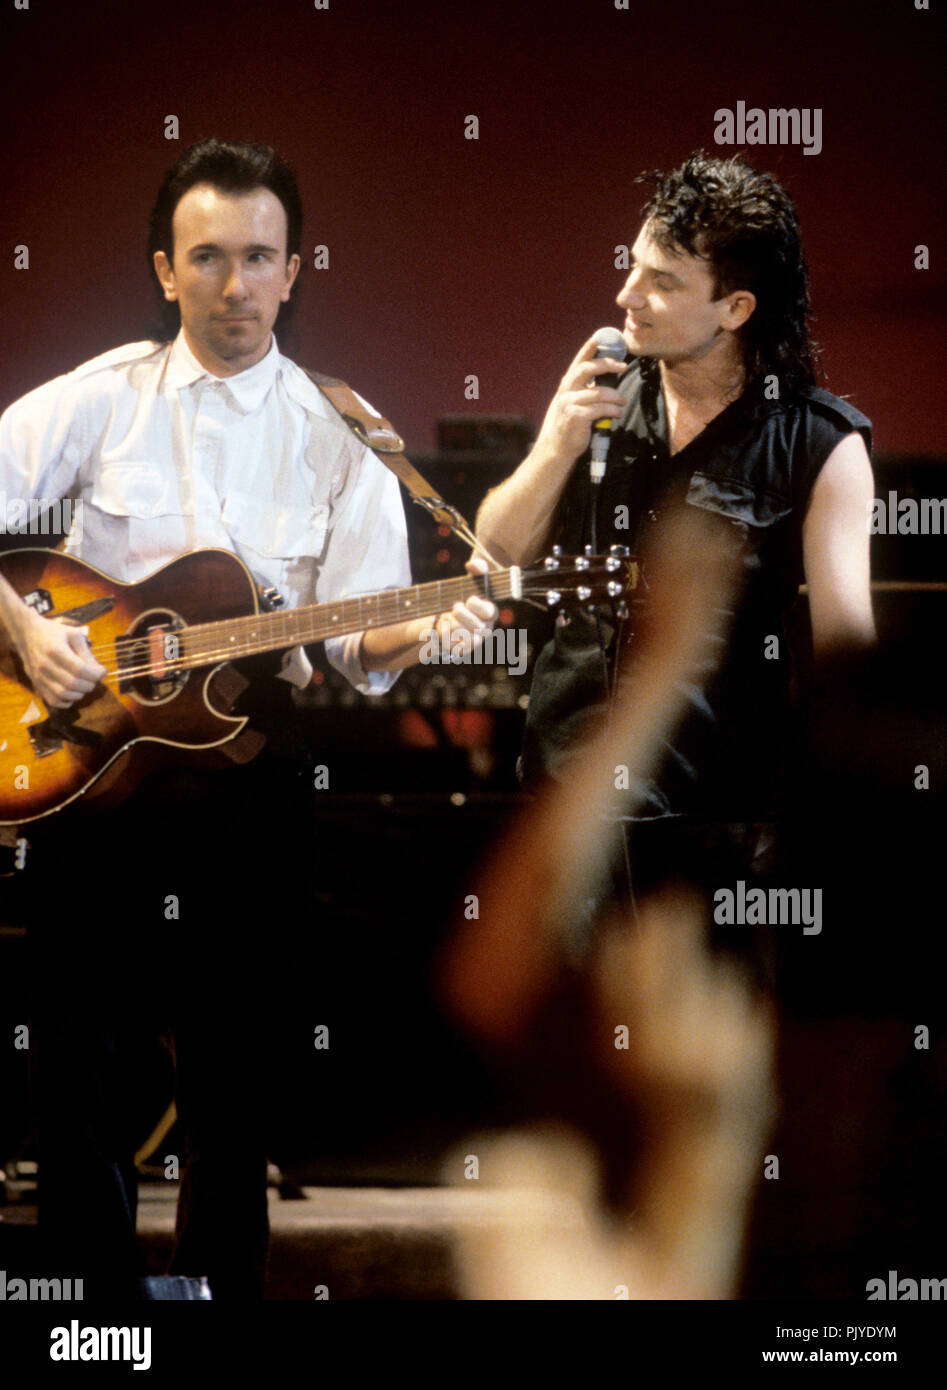 V.l. Die Kante (David Howell Evans), Bono (Paul David Hewson) (U2) am 21.11.1984 in Dortmund. | Verwendung weltweit Stockfoto